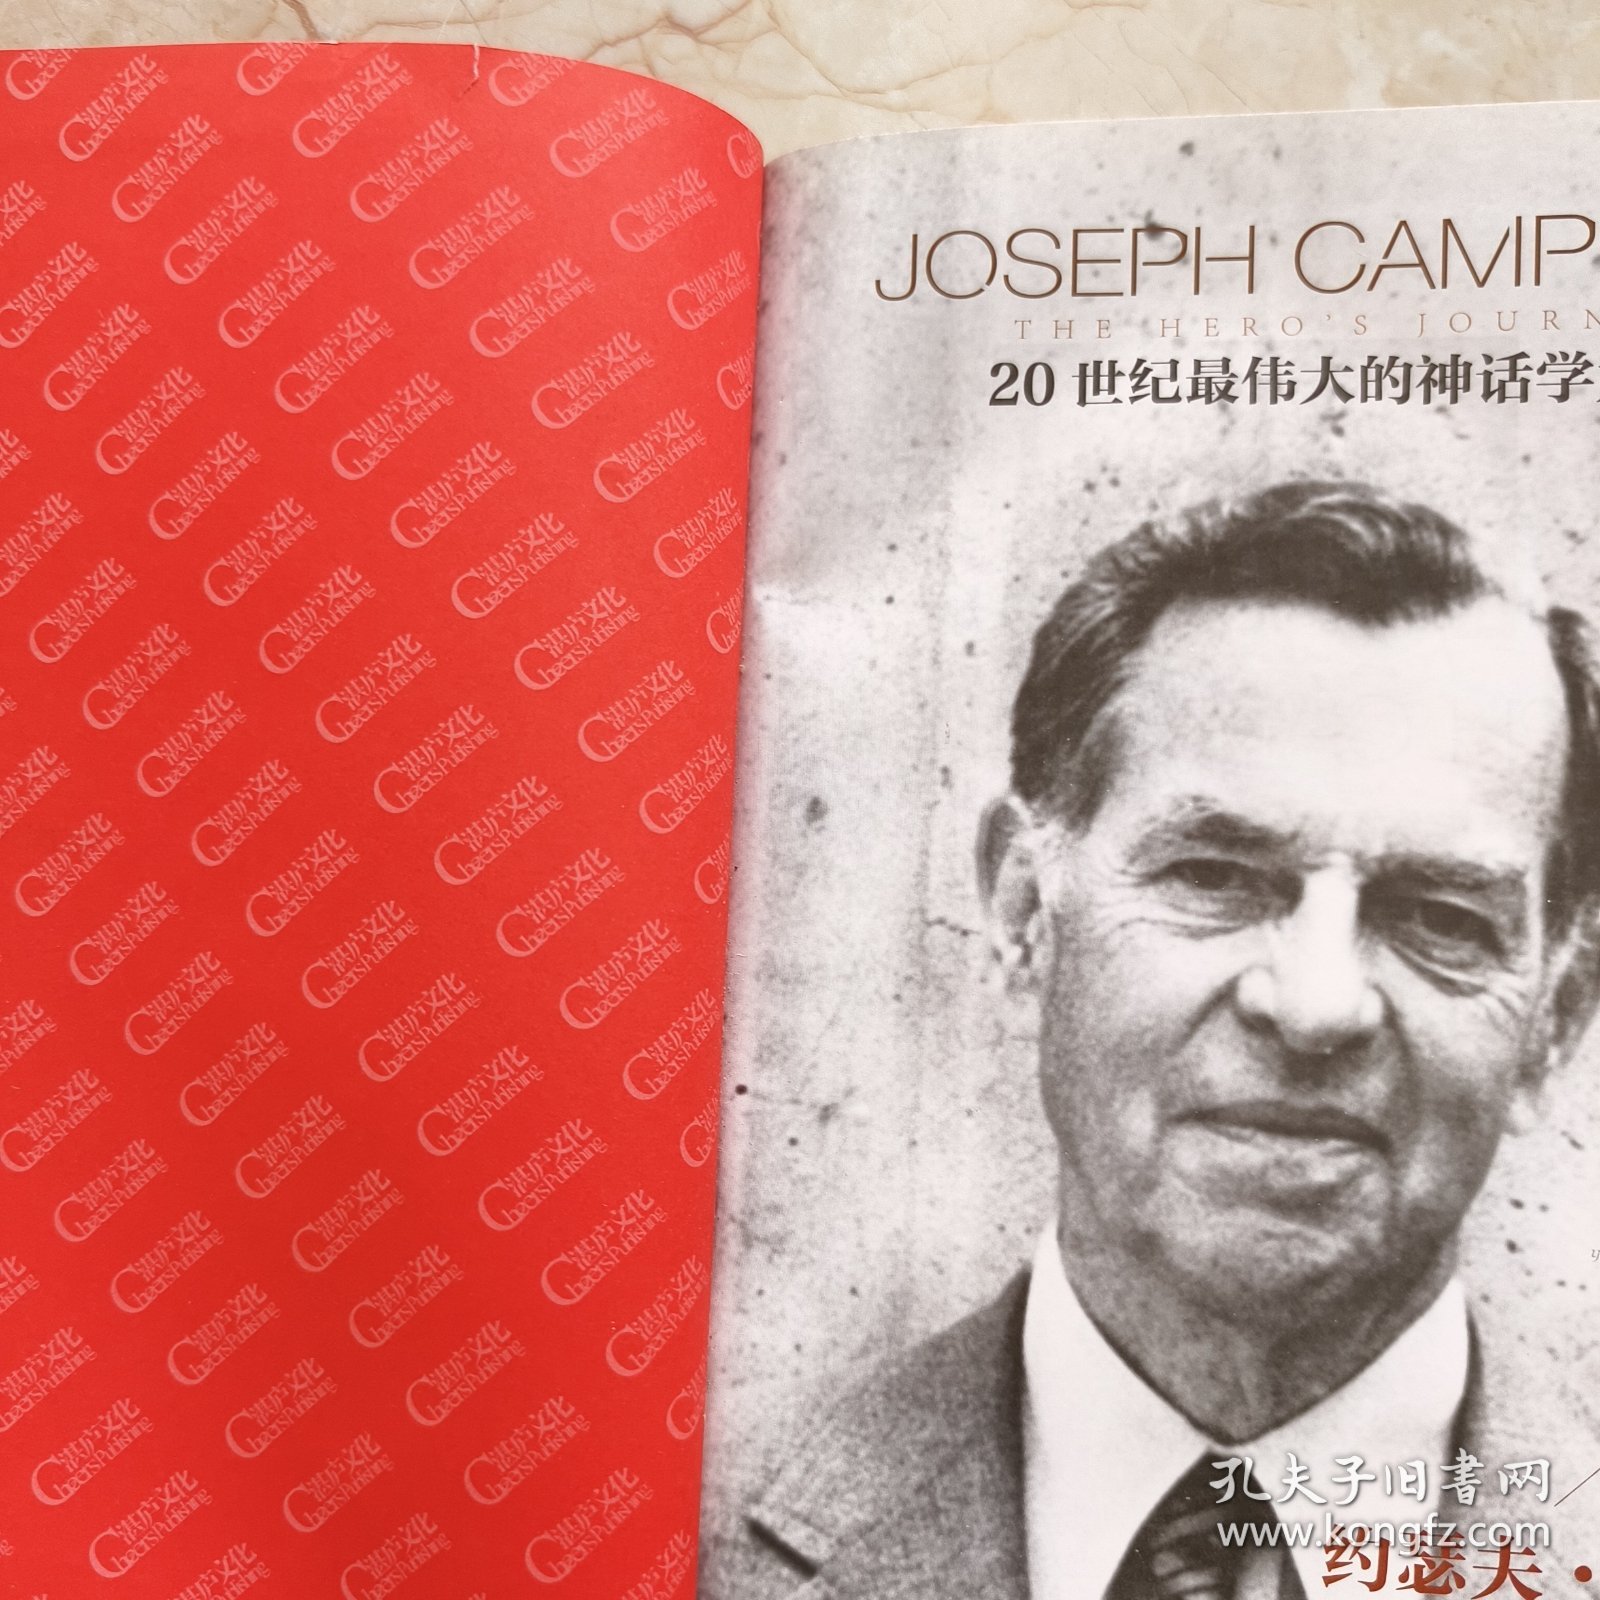 英雄之旅：约瑟夫·坎贝尔亲述他的生活与工作